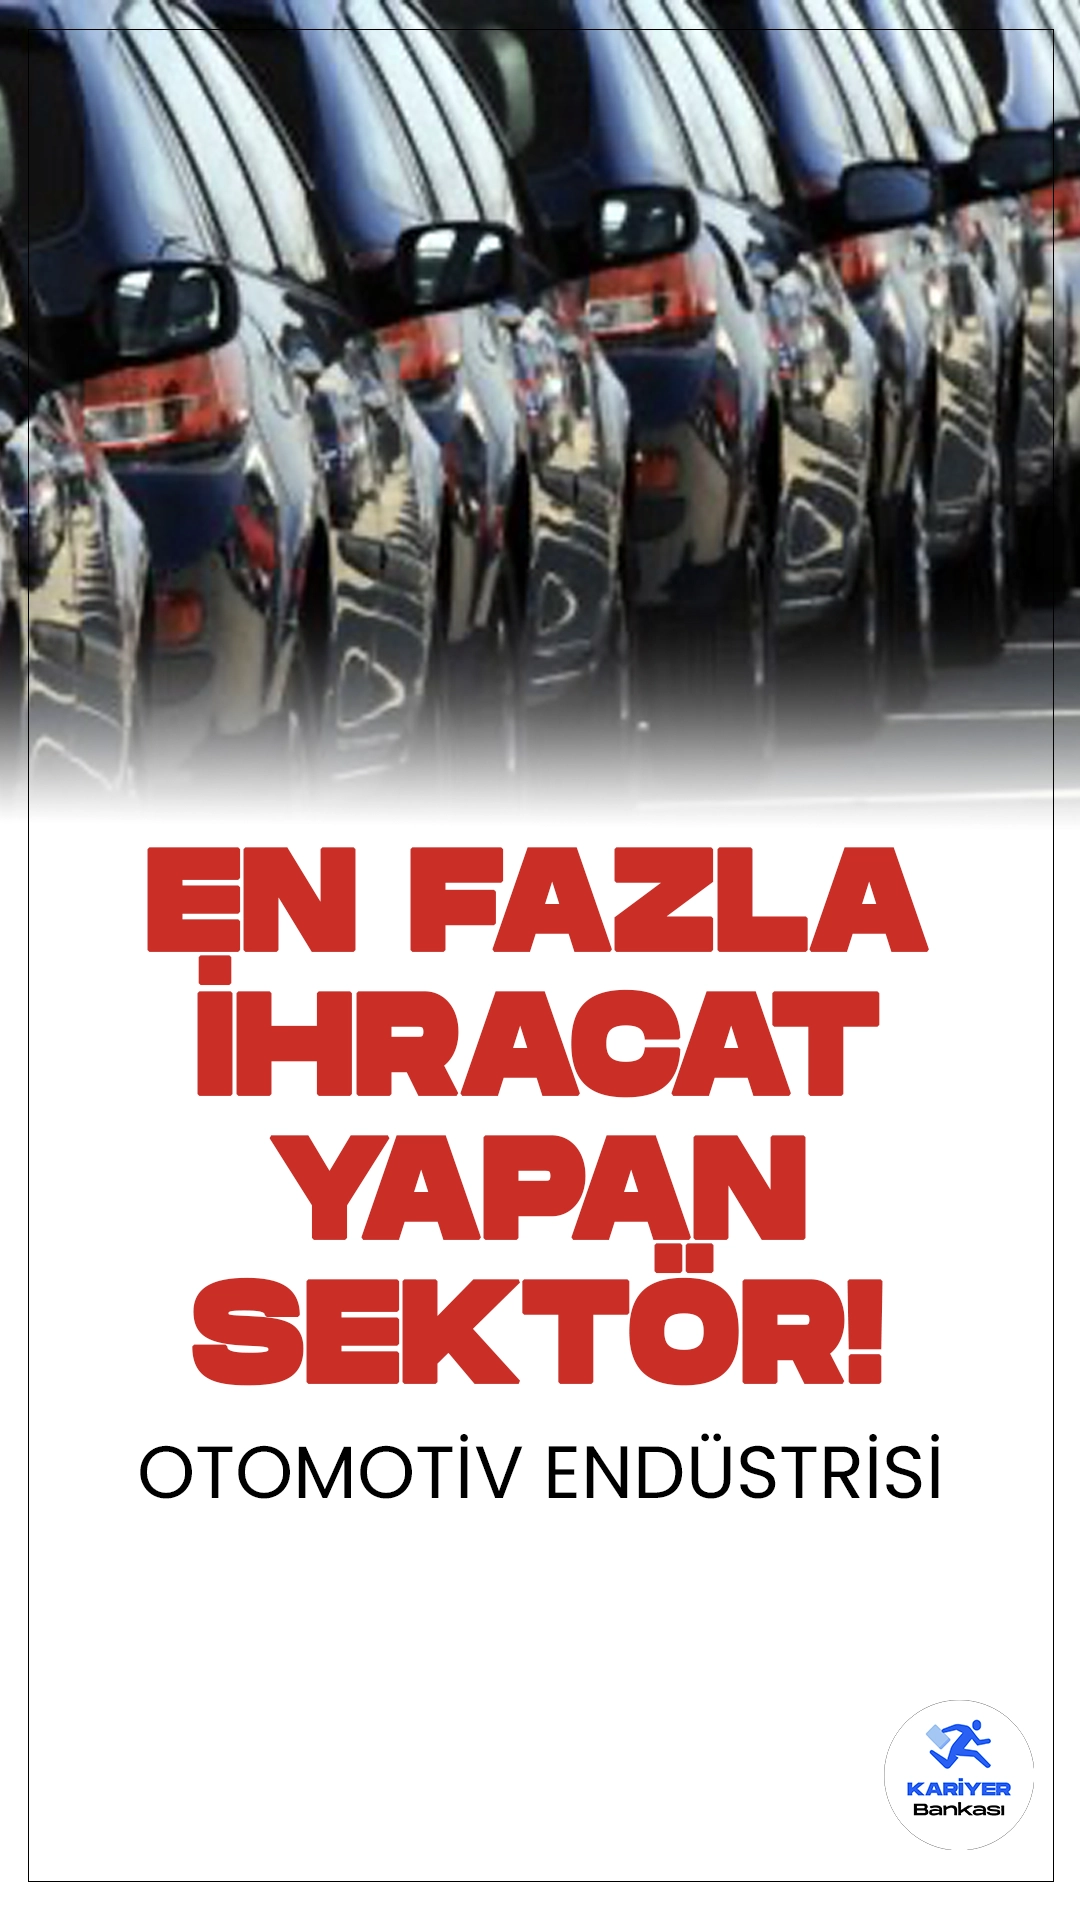 Otomotiv Endüstrisi Nisanda Zirvede.Otomotiv endüstrisi, nisanda en fazla ihracat yapan sektör olarak zirveye oturdu. Türkiye İhracatçılar Meclisi (TİM) verilerine göre, bu sektör, 2,7 milyar dolarlık ihracatla sanayi grubunda liderliği ele geçirdi.